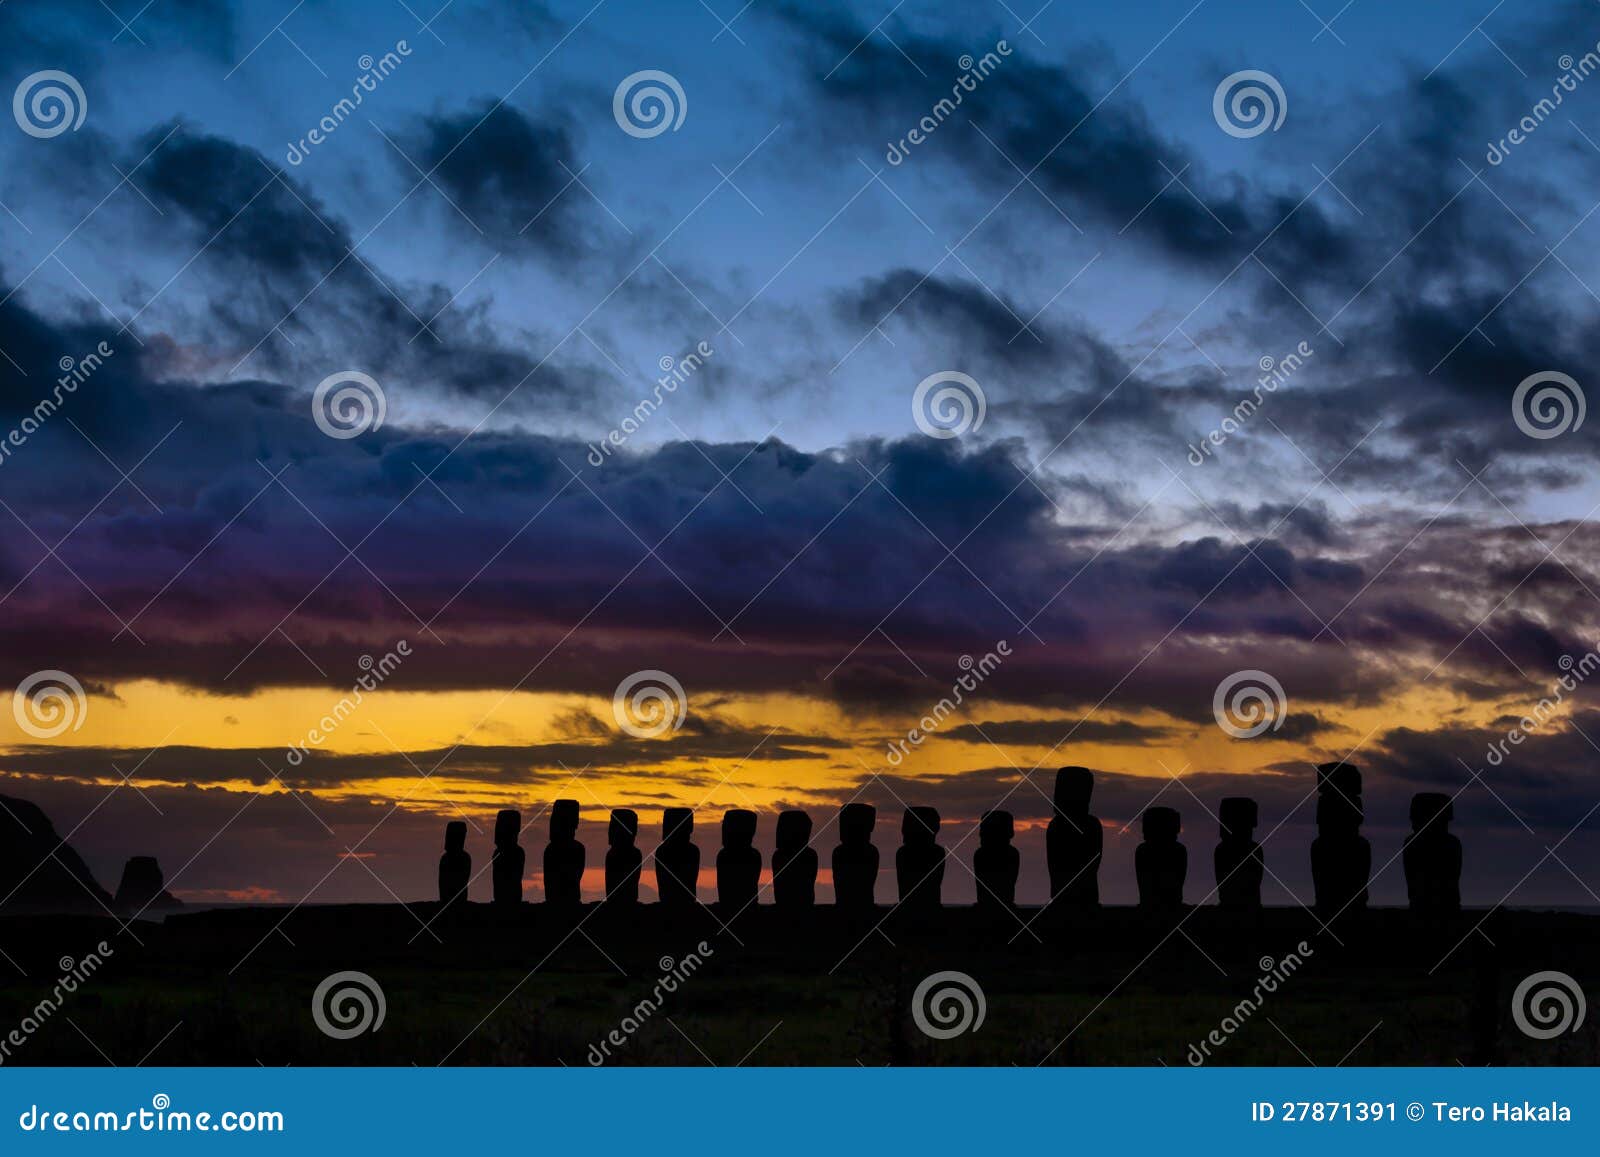 fifteen moai against orange and blue sunrise